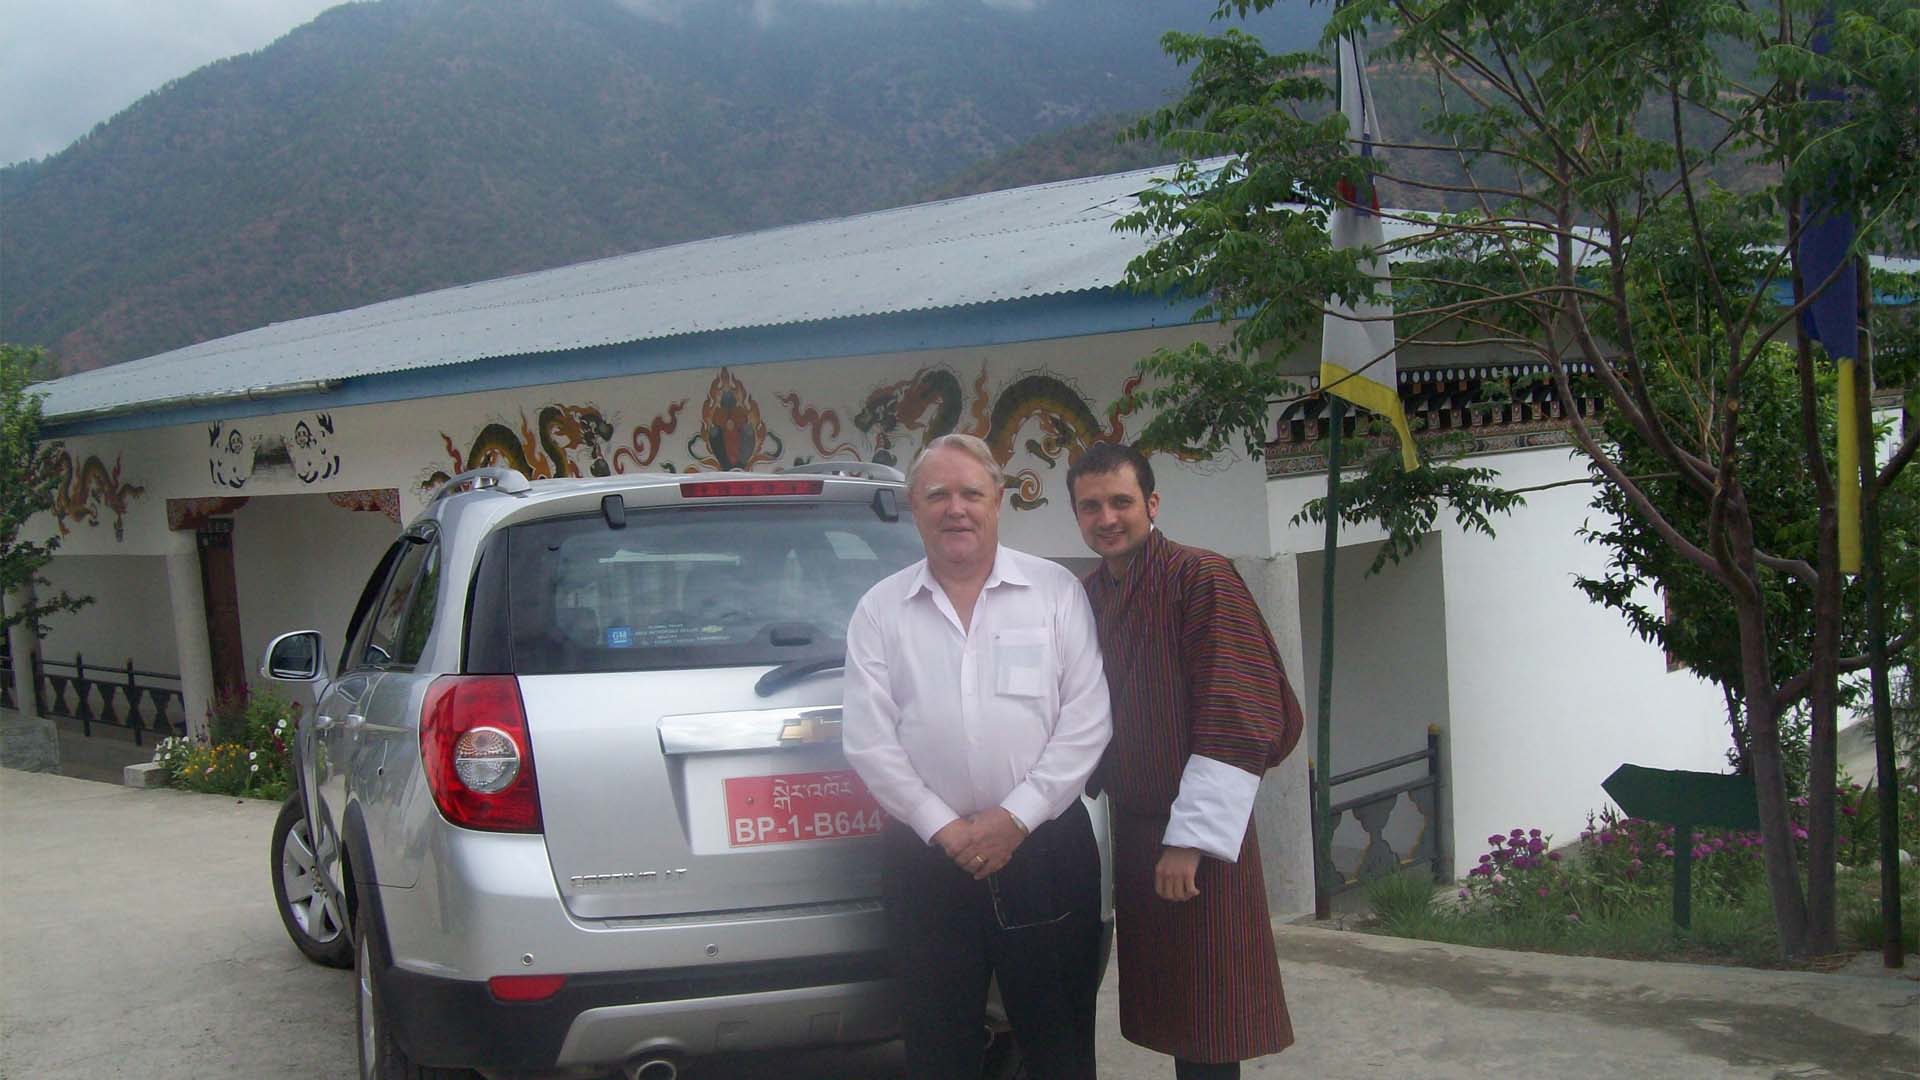 John Hughes in Bhutan